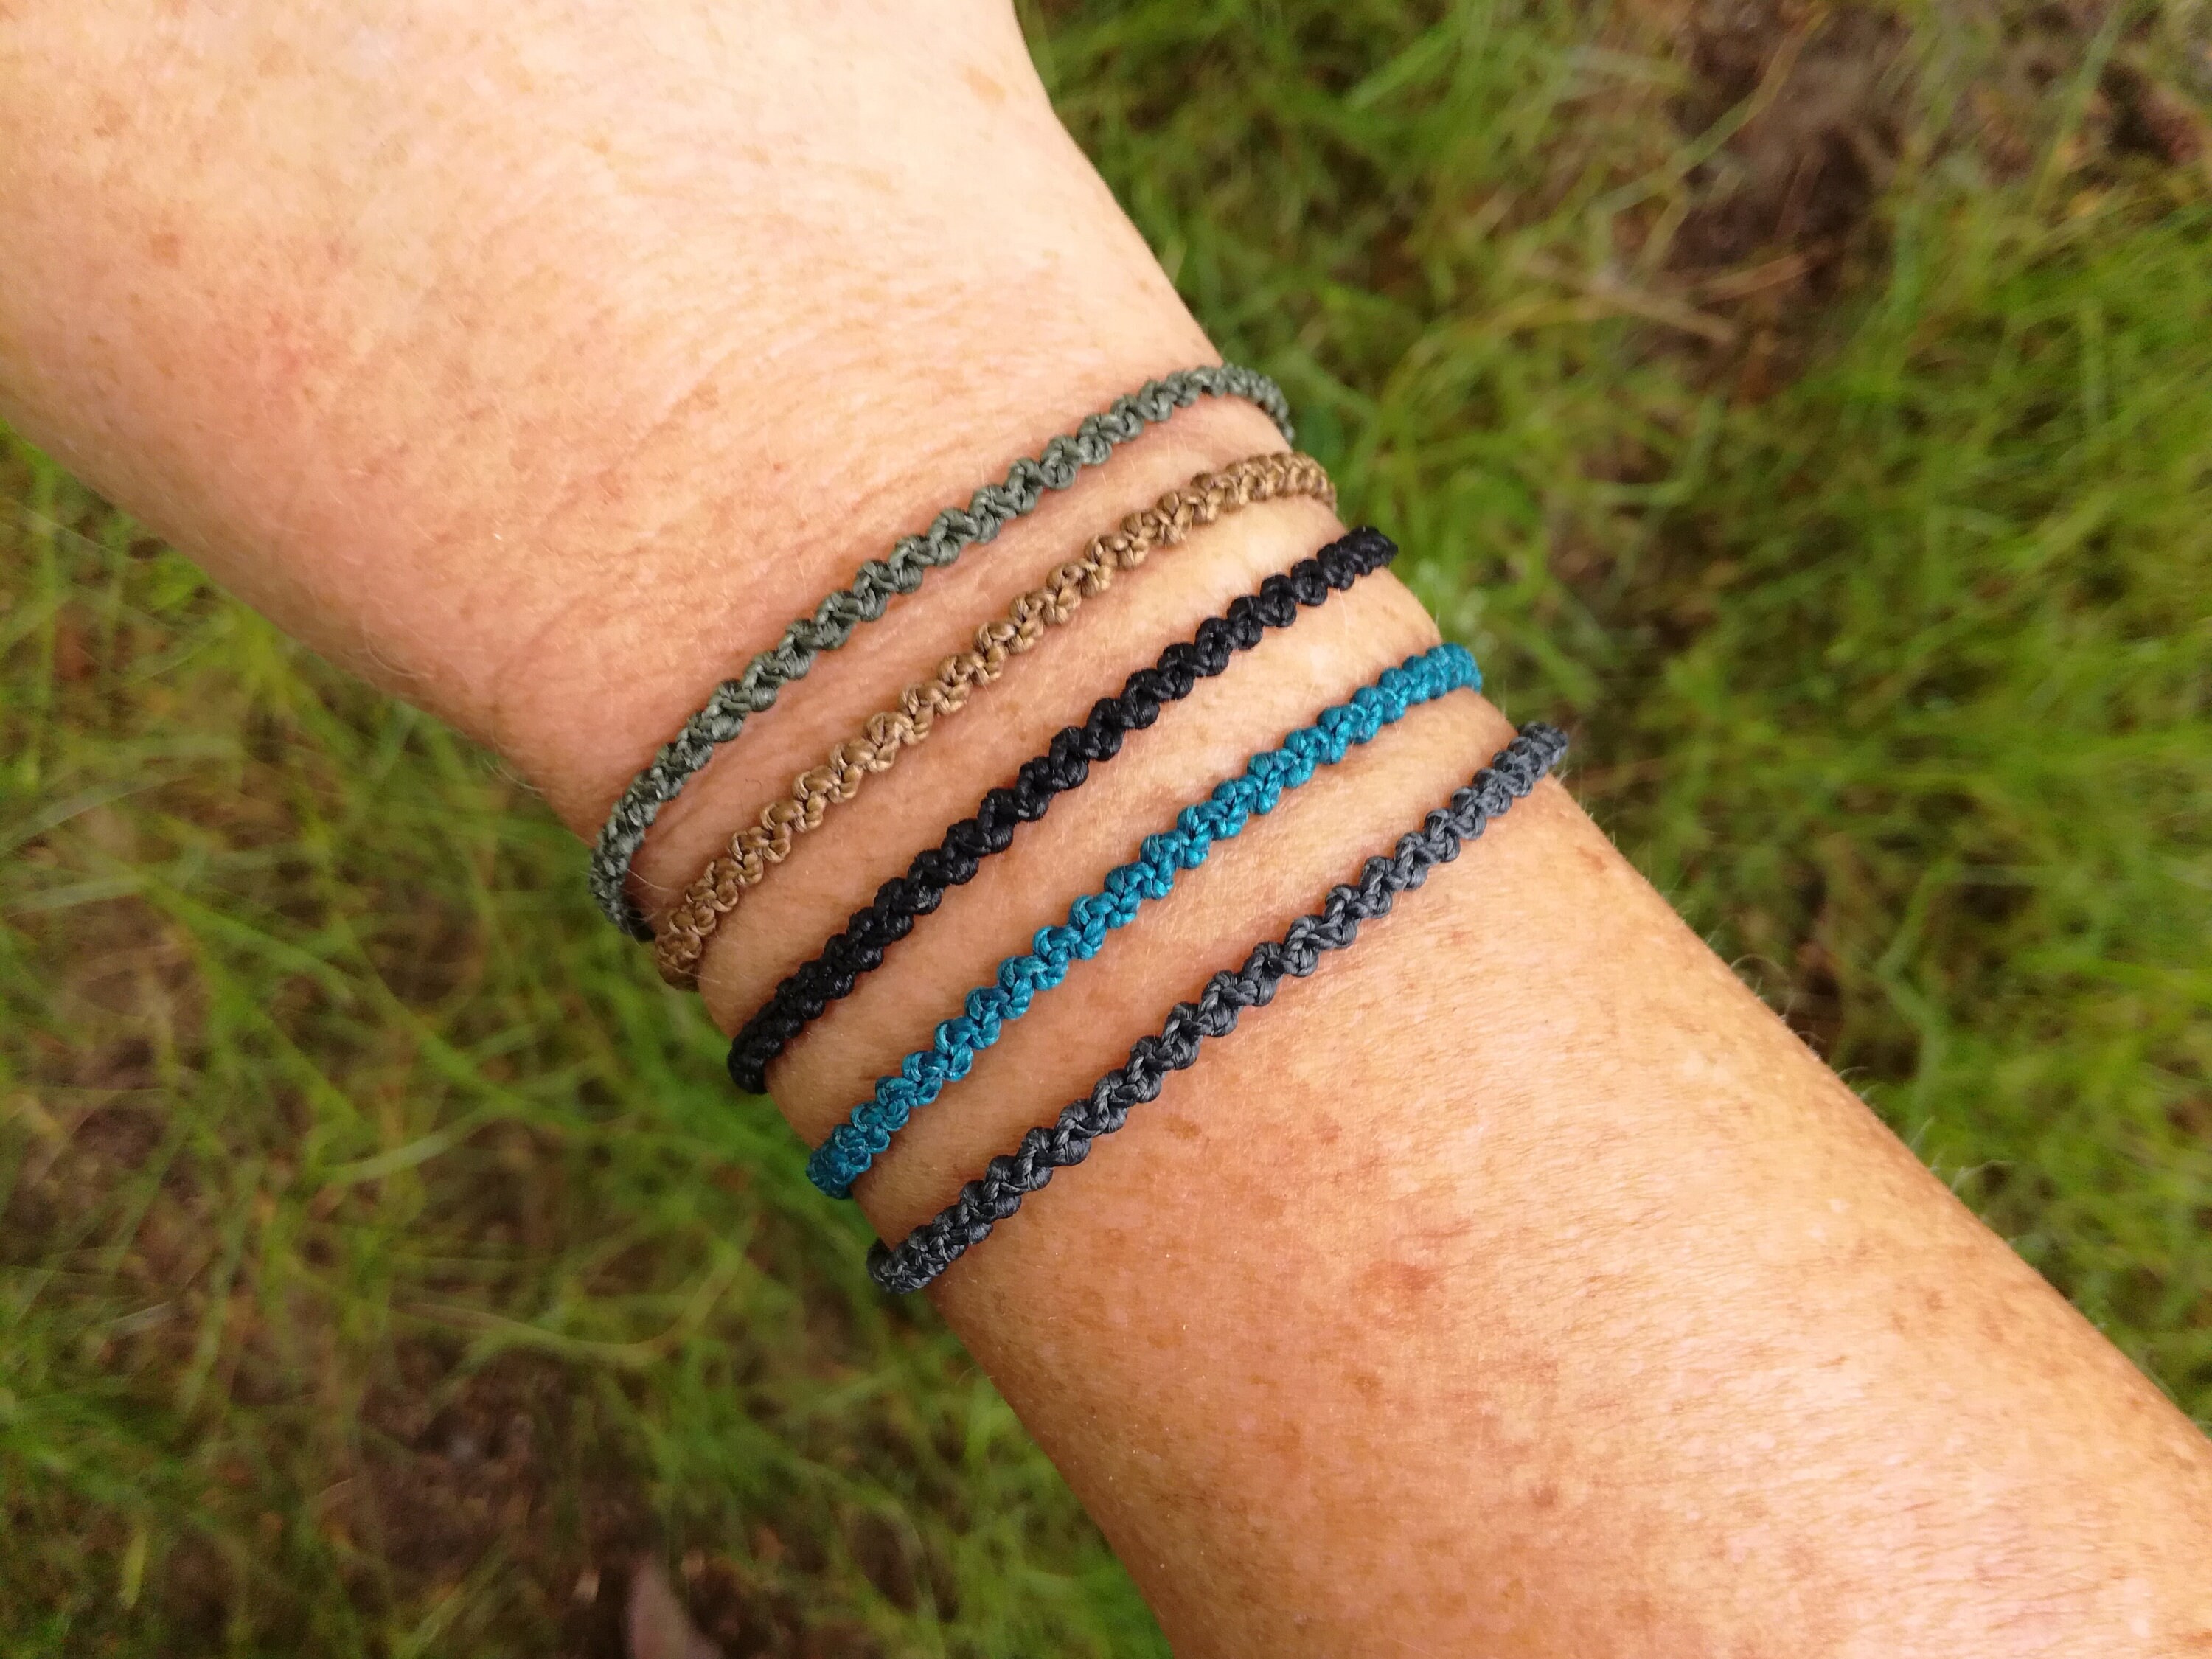 Mini macrame bracelets!